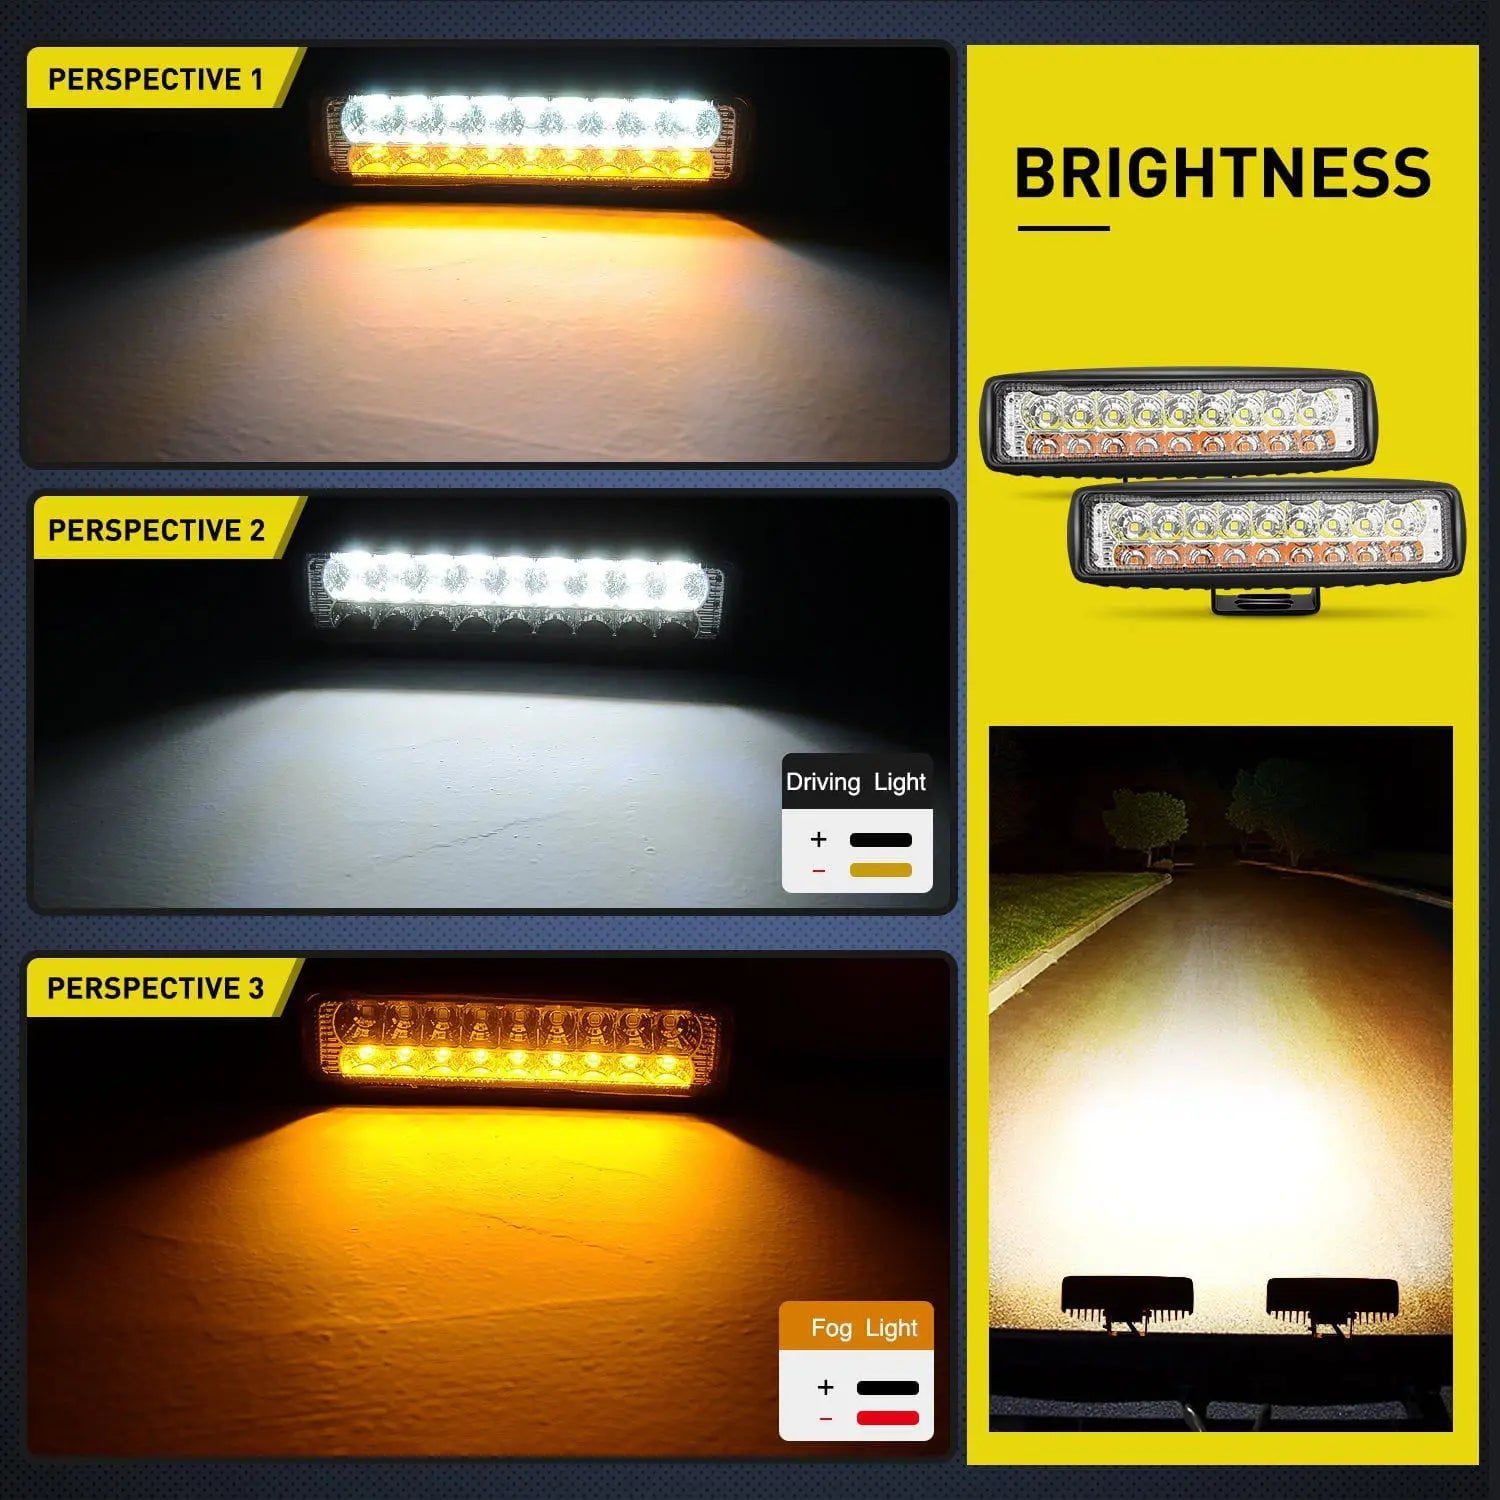 LED Light Bar 6" 54W 4800LM Amber White Flood Led Work Lights (Pair)